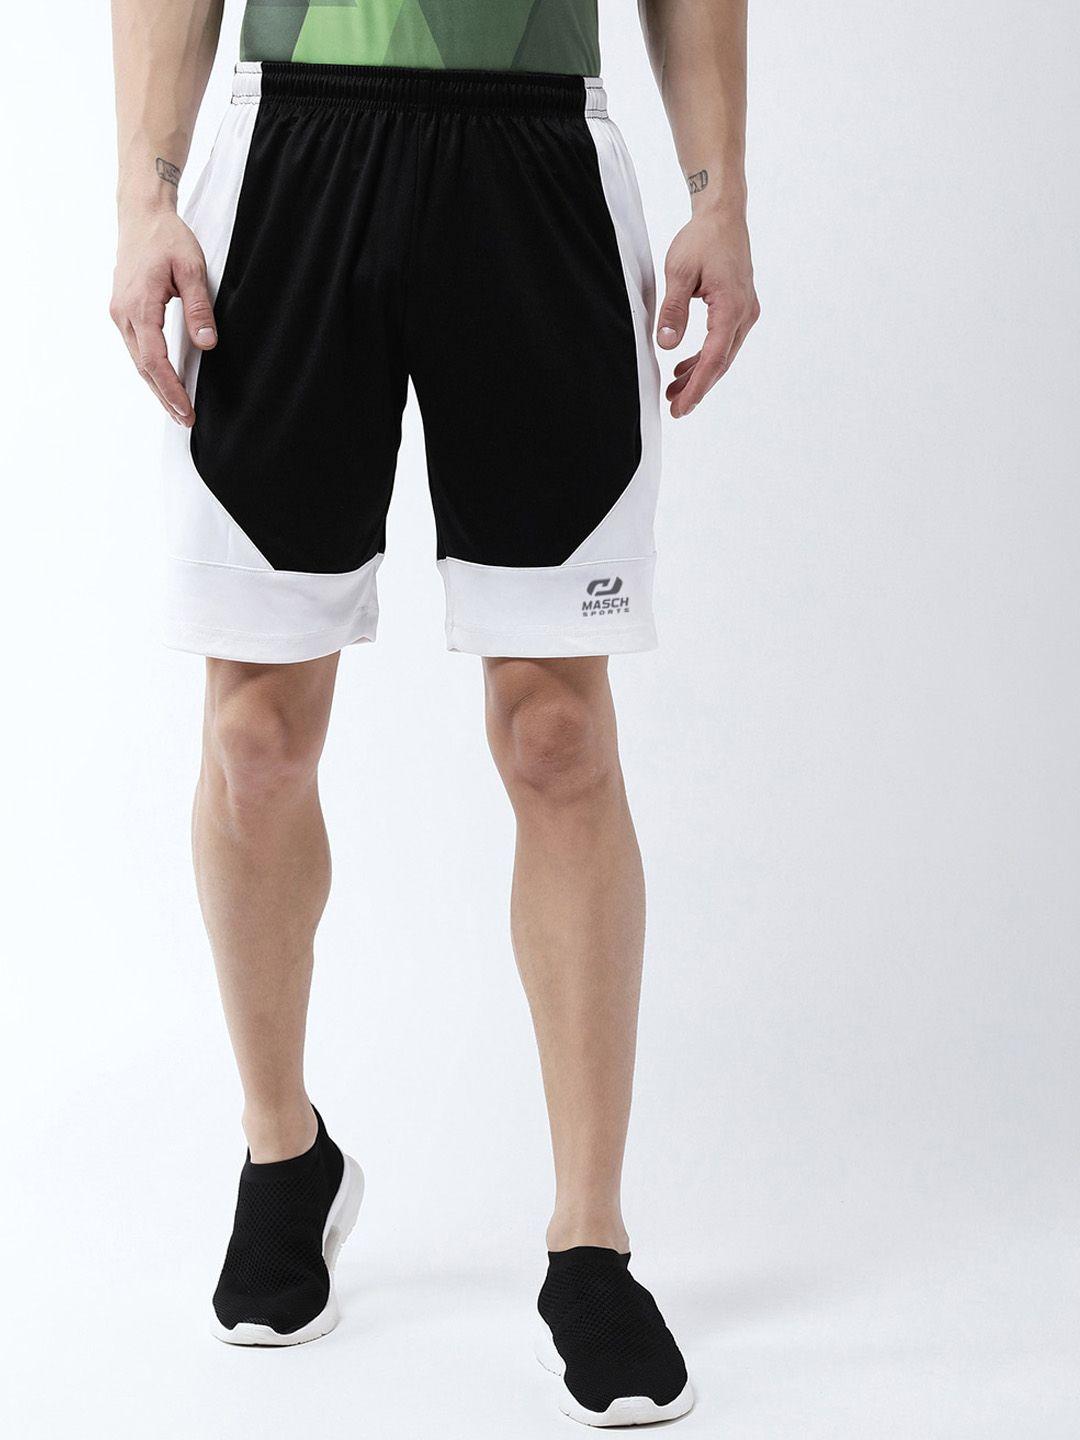 masch sports men black & white colourblocked sports shorts